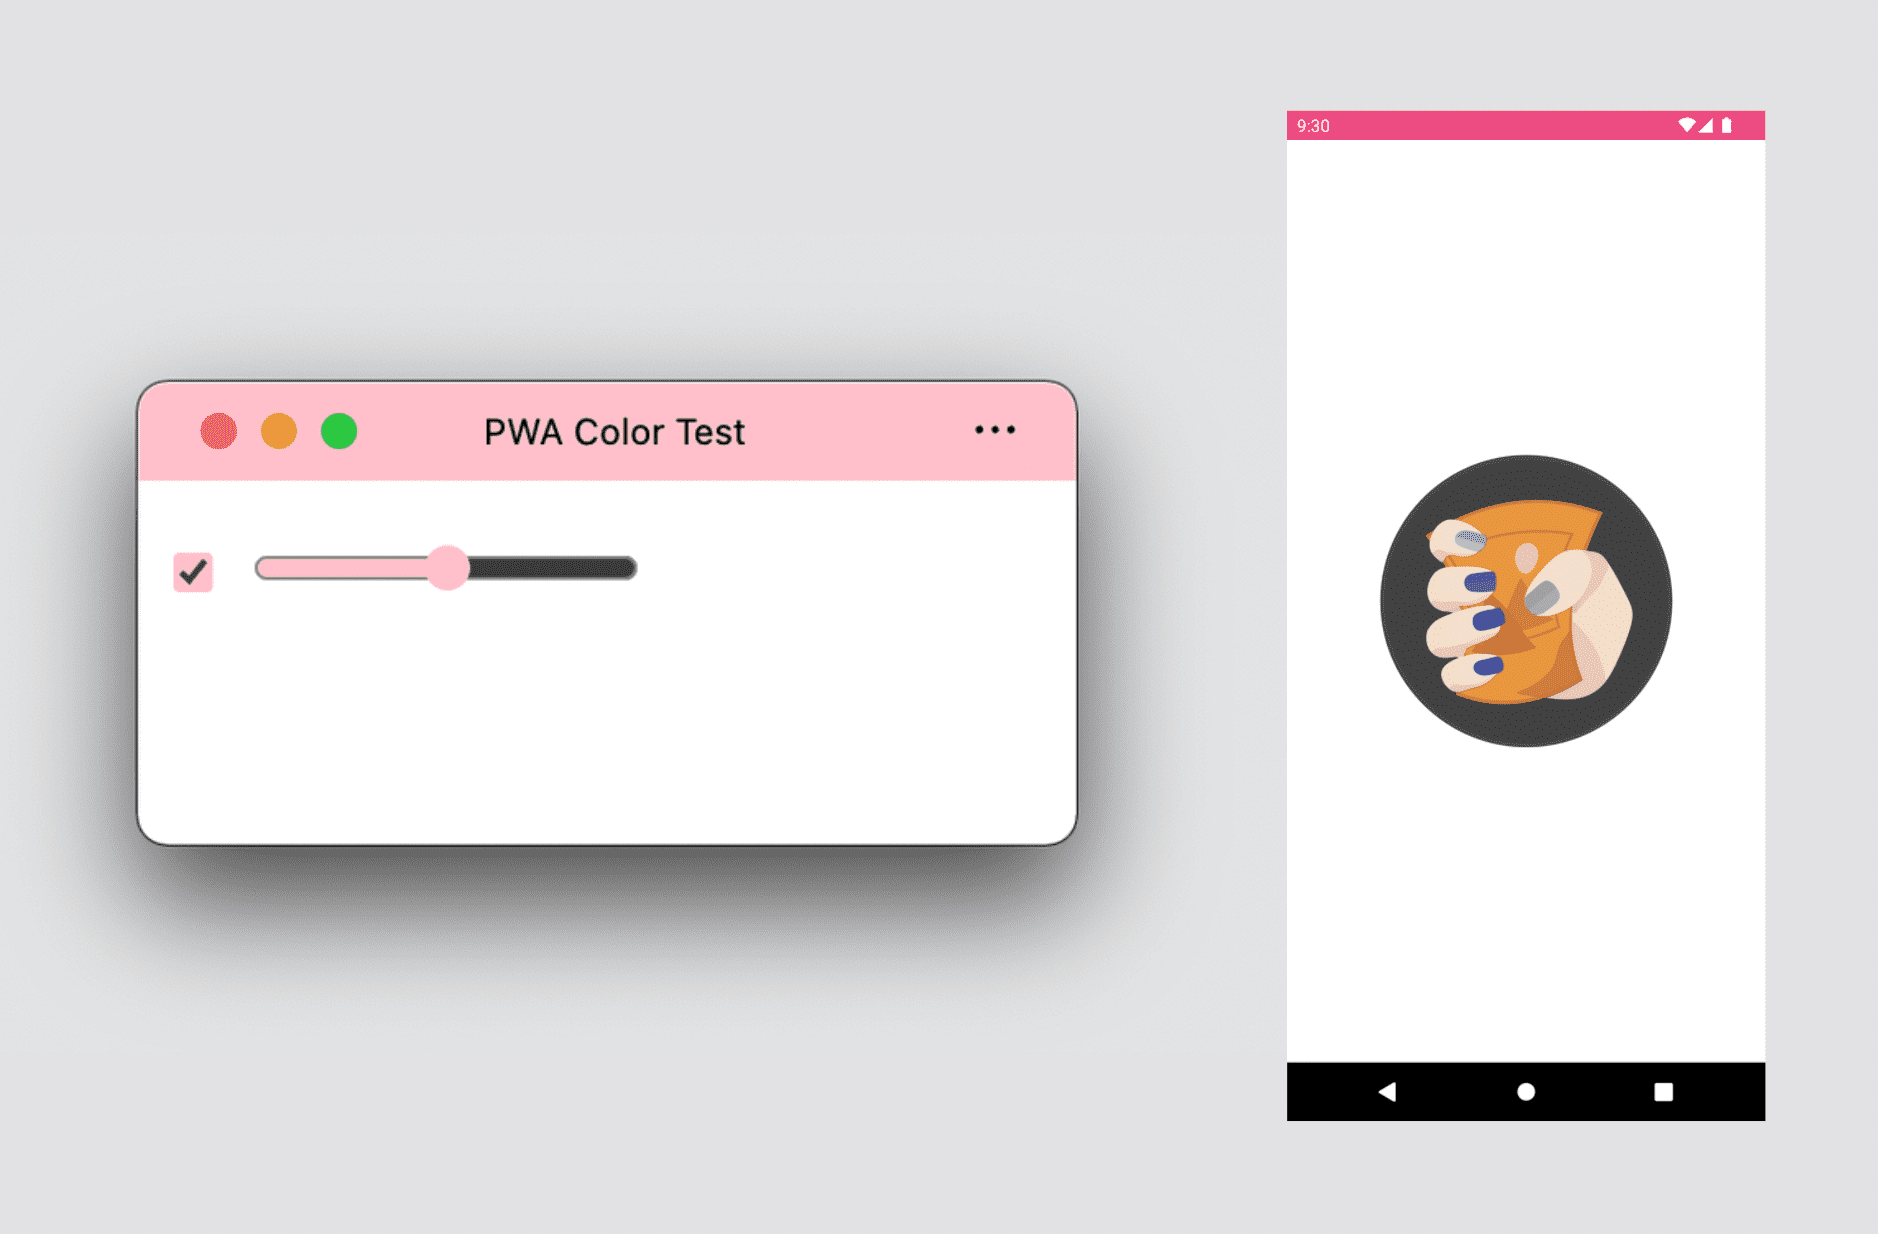 PWA บนเดสก์ท็อปแสดงธีมและสีเฉพาะจุด รวมถึงหน้าจอแนะนำ PWA ของ Android ที่แสดงธีมและสีพื้นหลัง